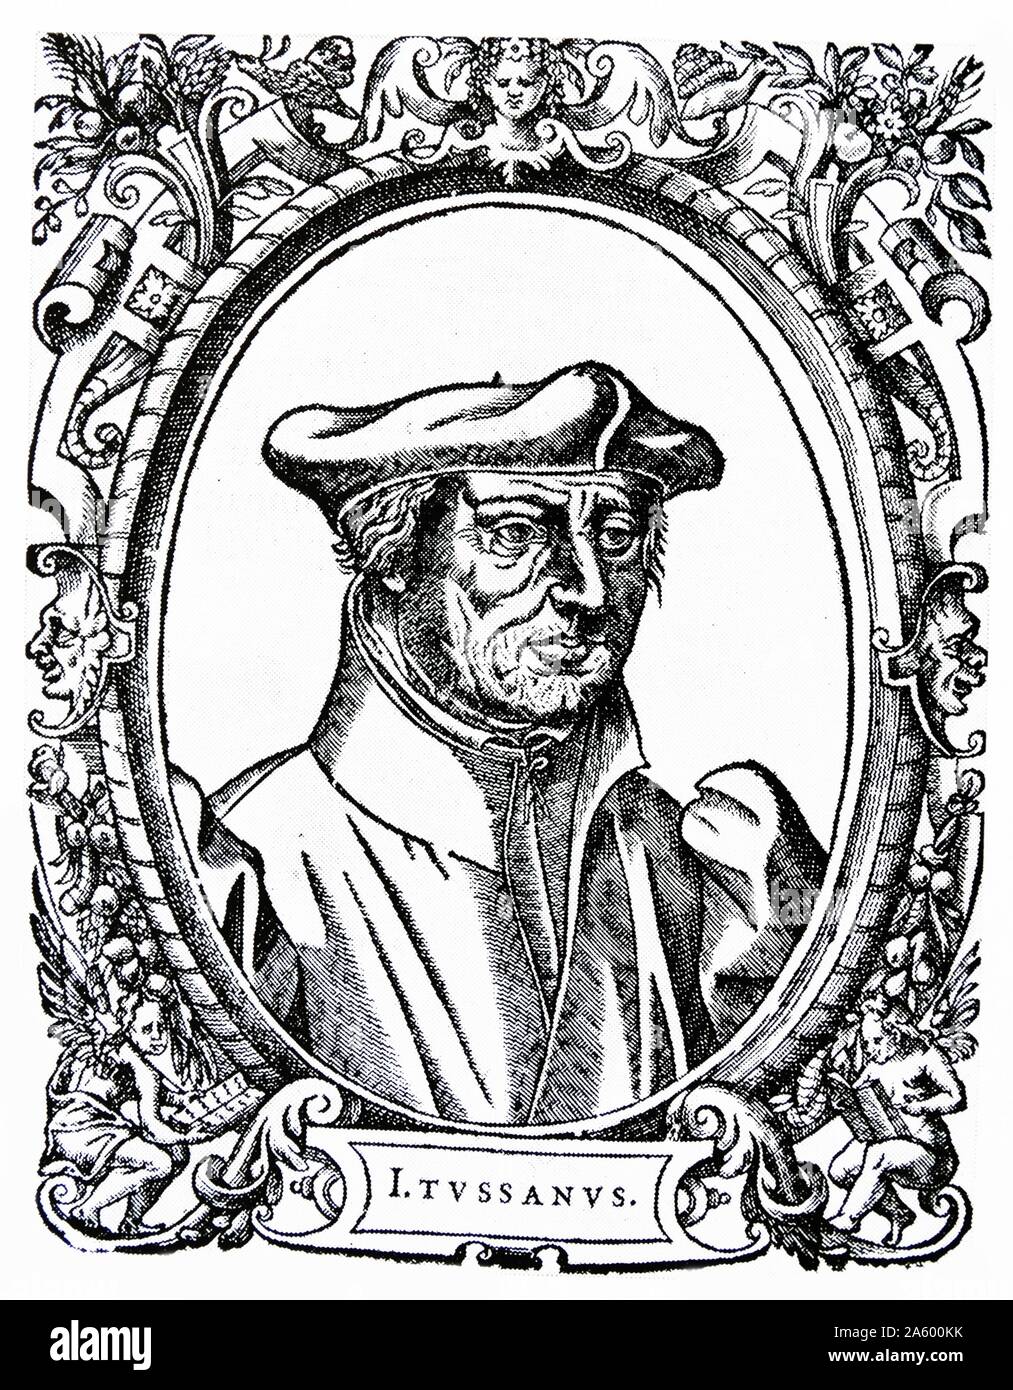 Holzschnitt-Porträt von Justus Jonas (1493-1555) einen deutschen lutherischen Reformer. Datiert aus dem 16. Jahrhundert Stockfoto